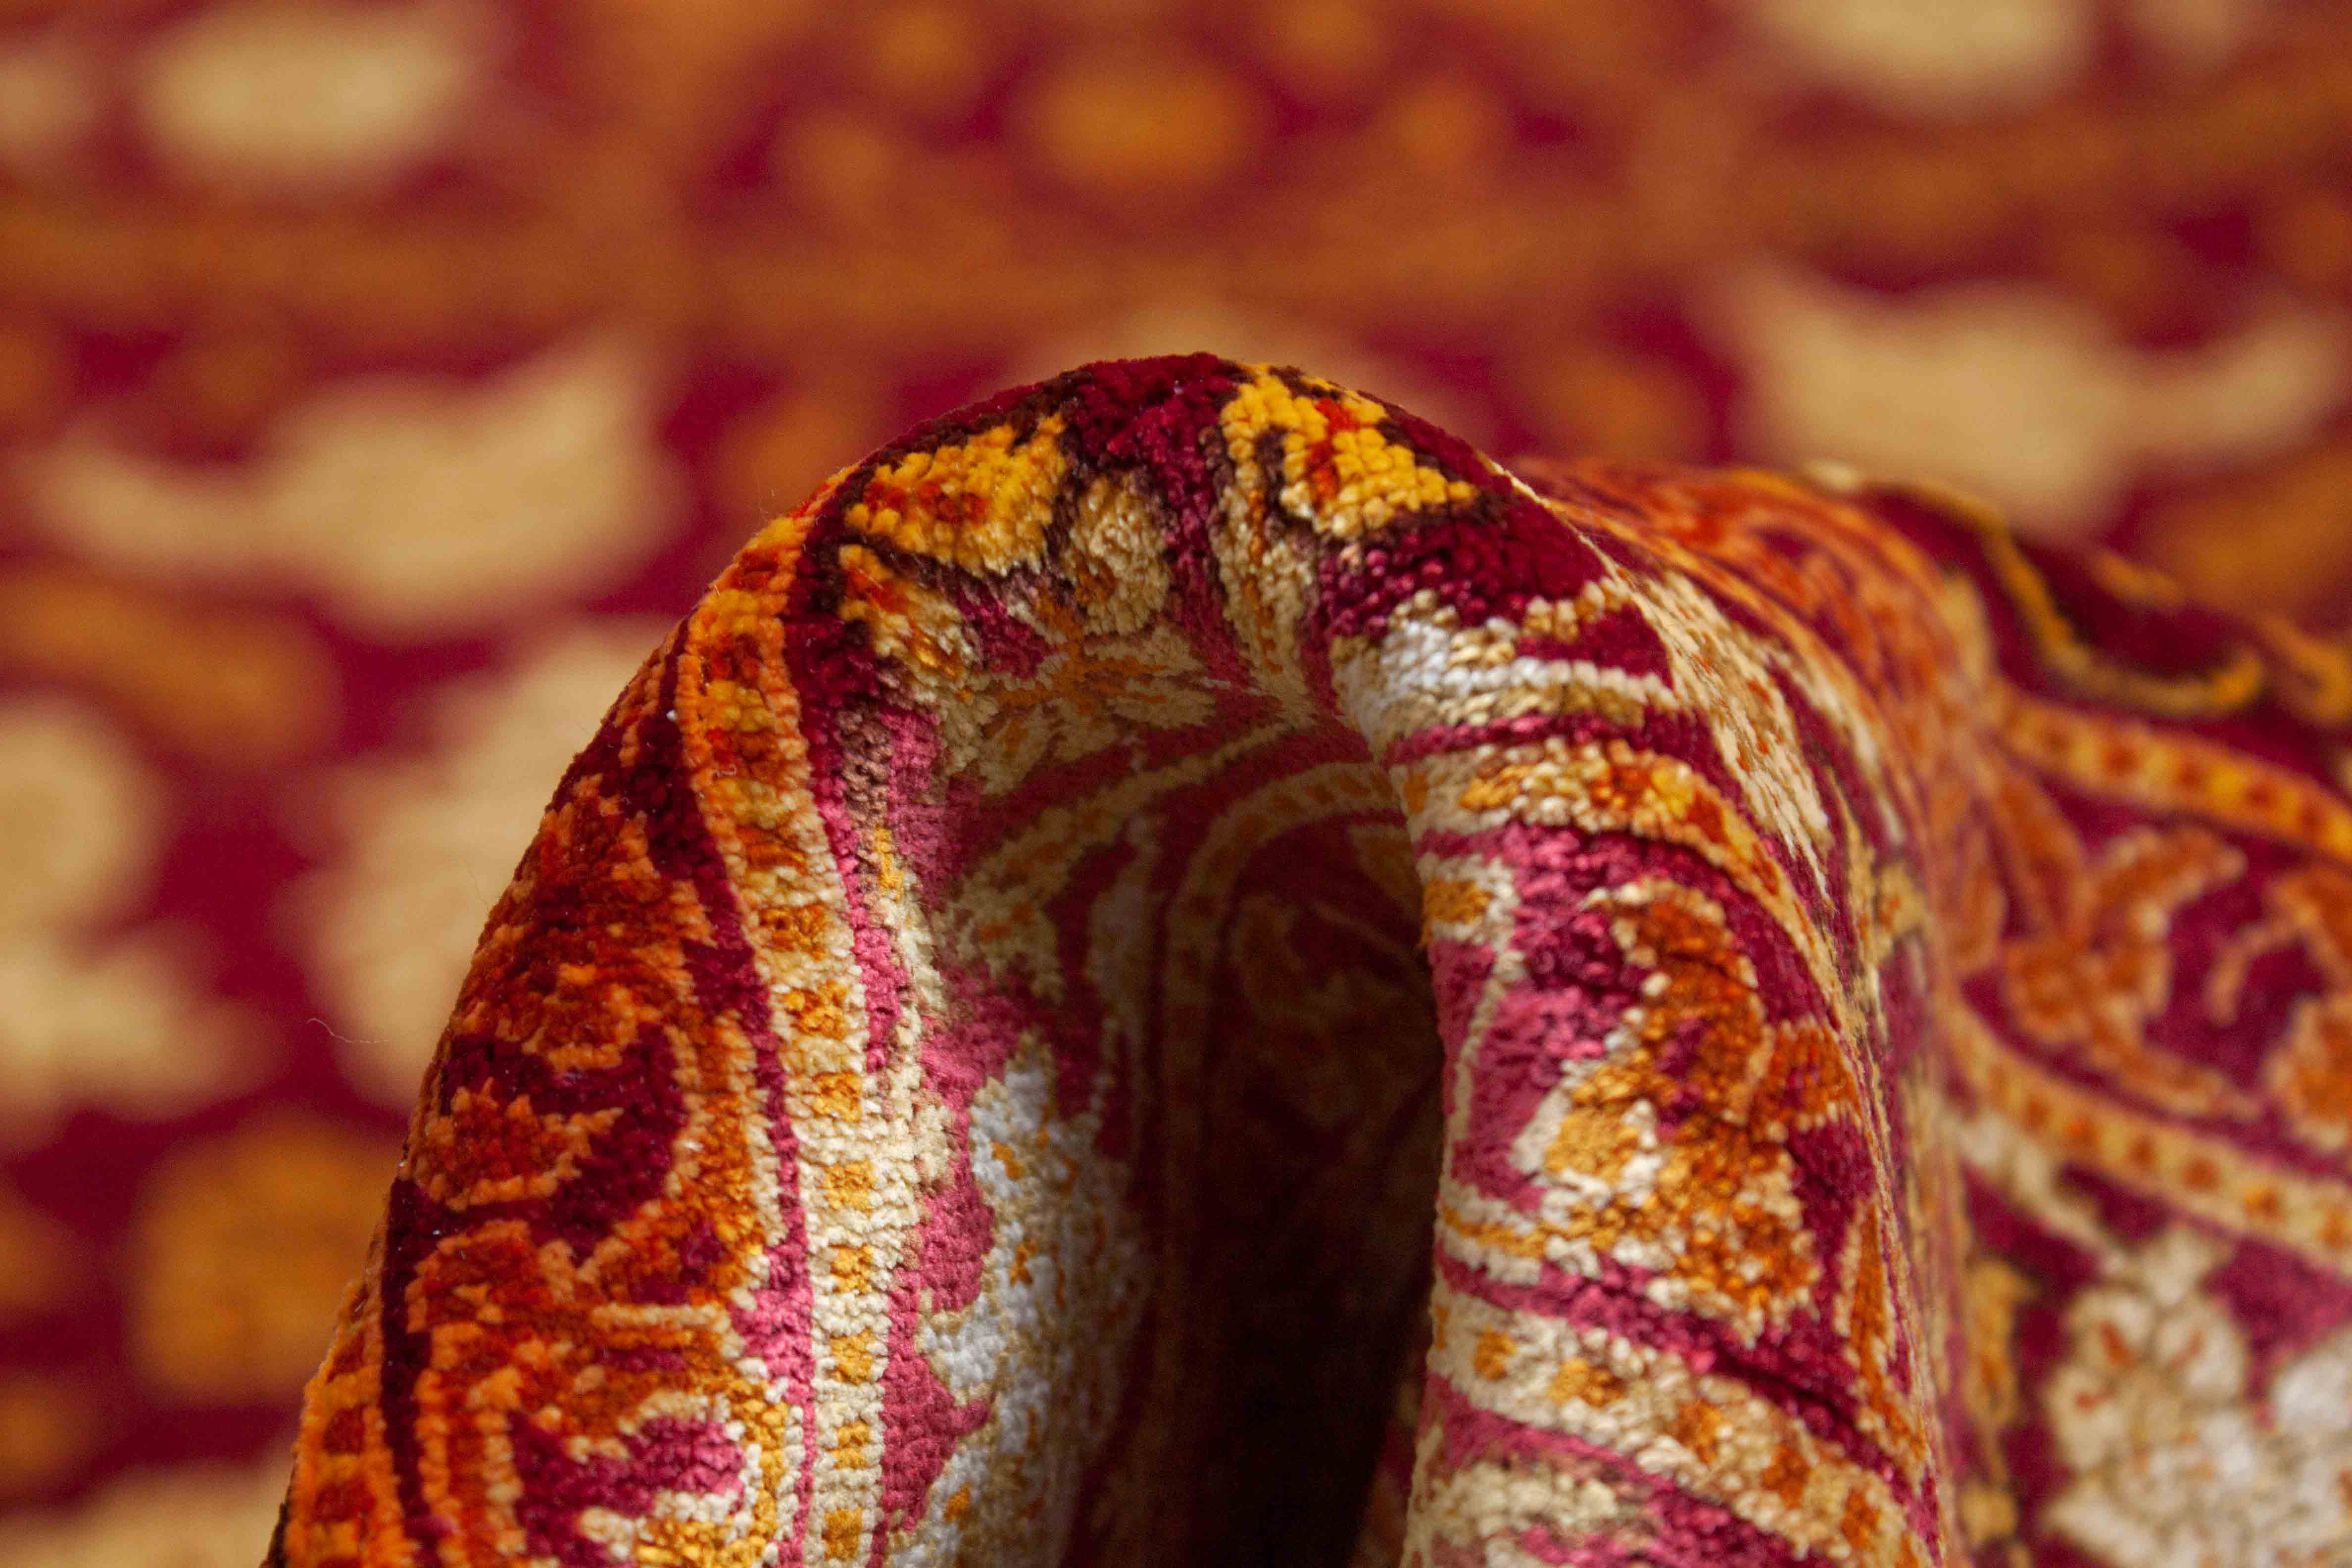 Eine Fotoaufnahme eines Ghom Teppichs.